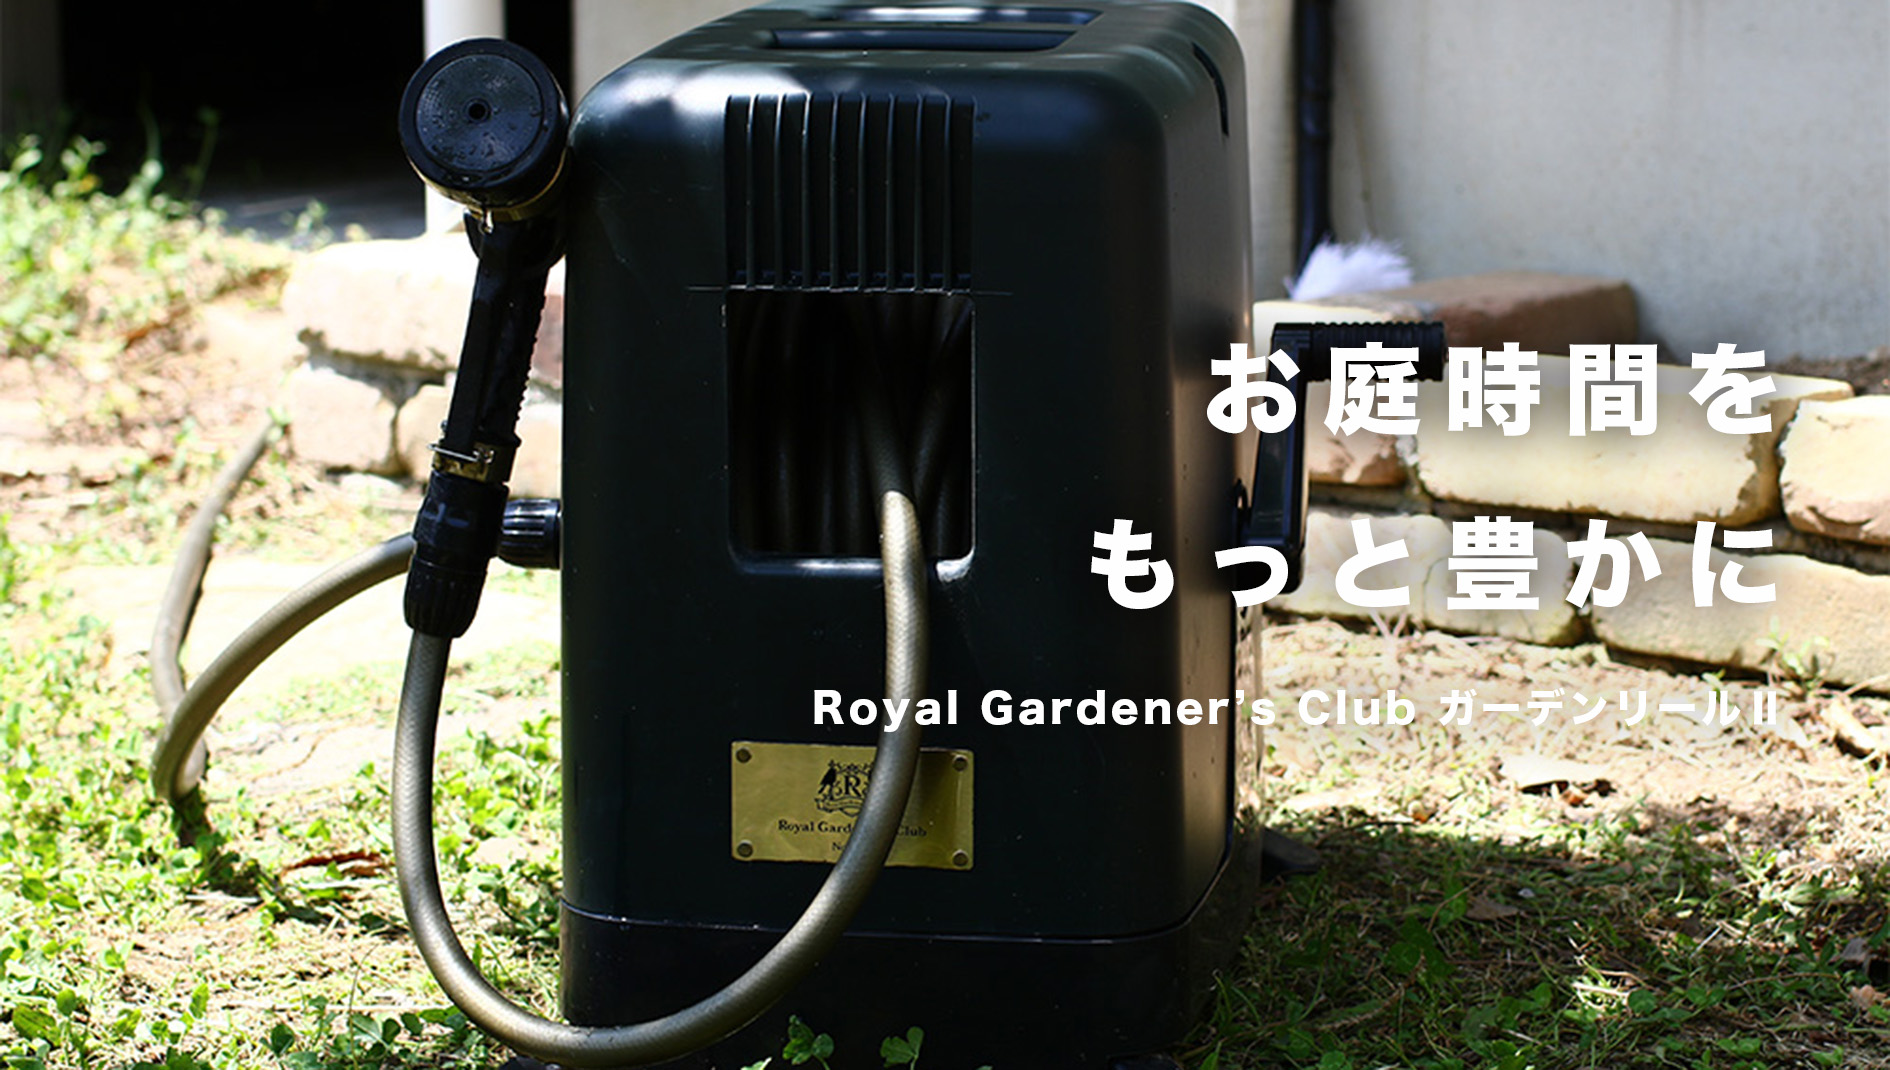 お庭時間をもっと豊かに　Royal Gardener’s Club ガーデンリール